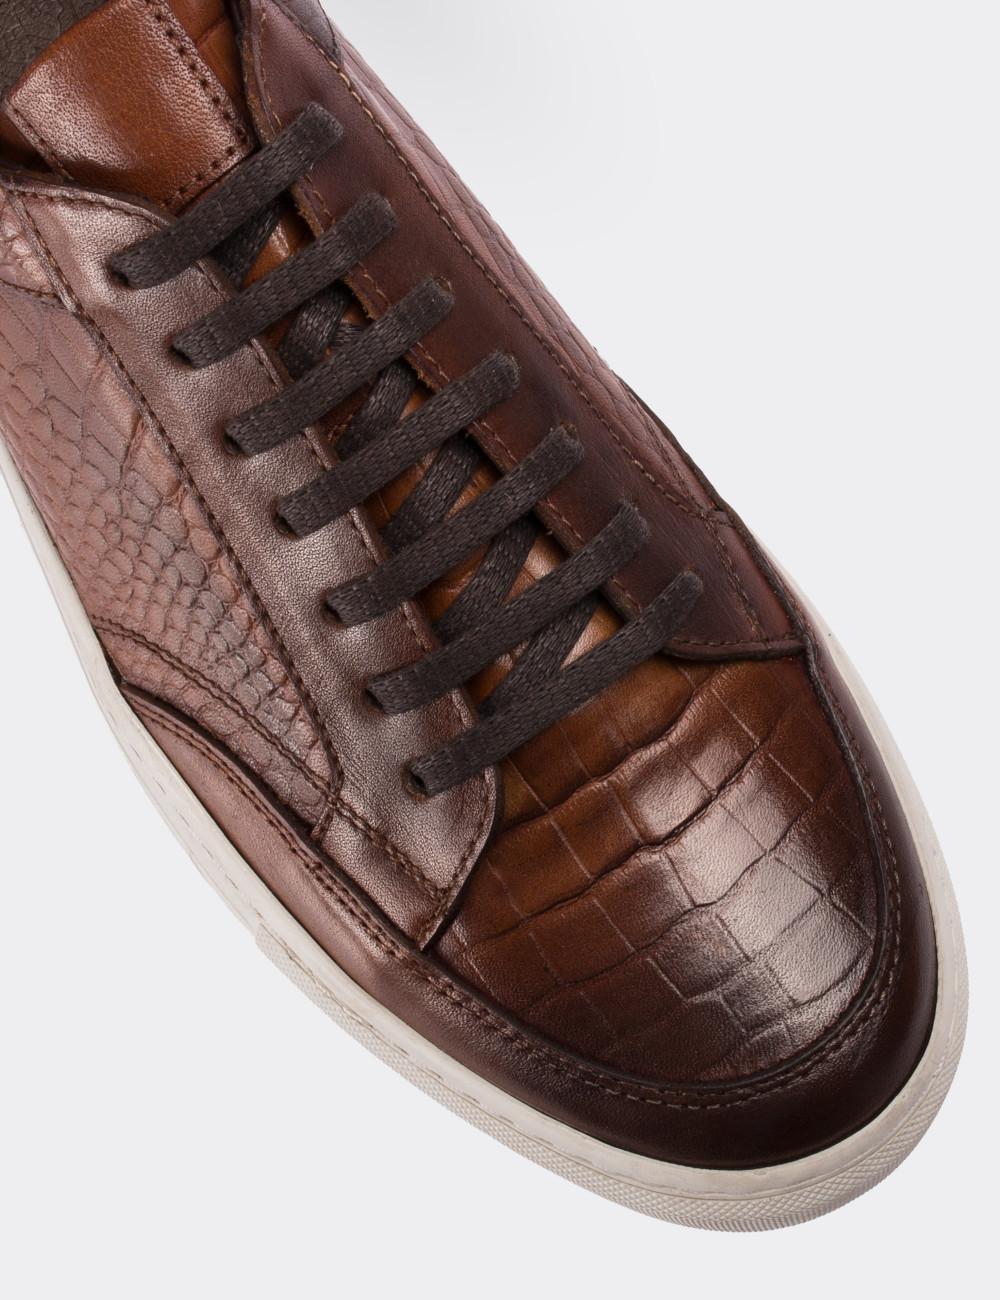 Tan  Leather Sneakers - 01629MTBAC01